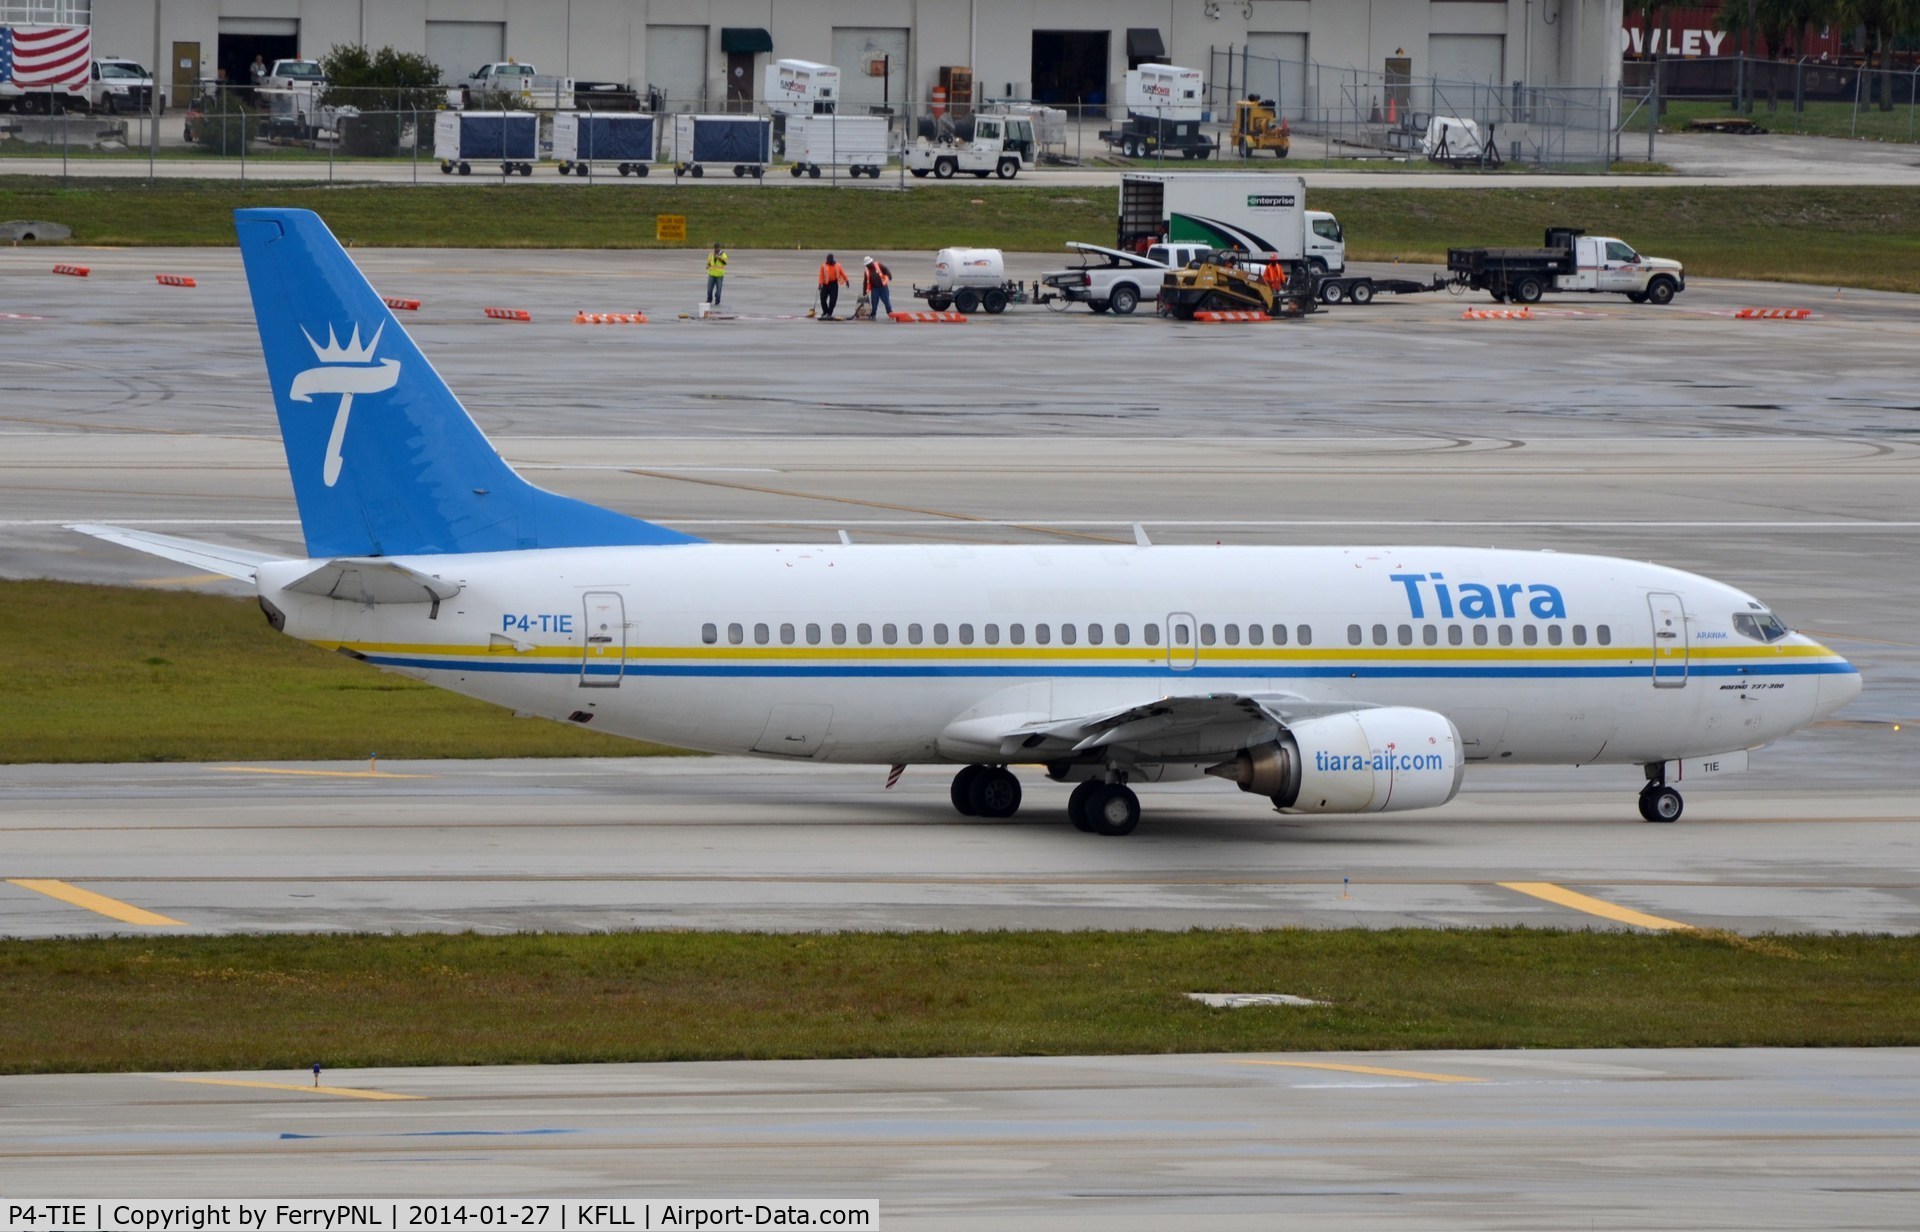 P4-TIE, 1988 Boeing 737-322 C/N 24249, Tiara B733 taxying for departure.